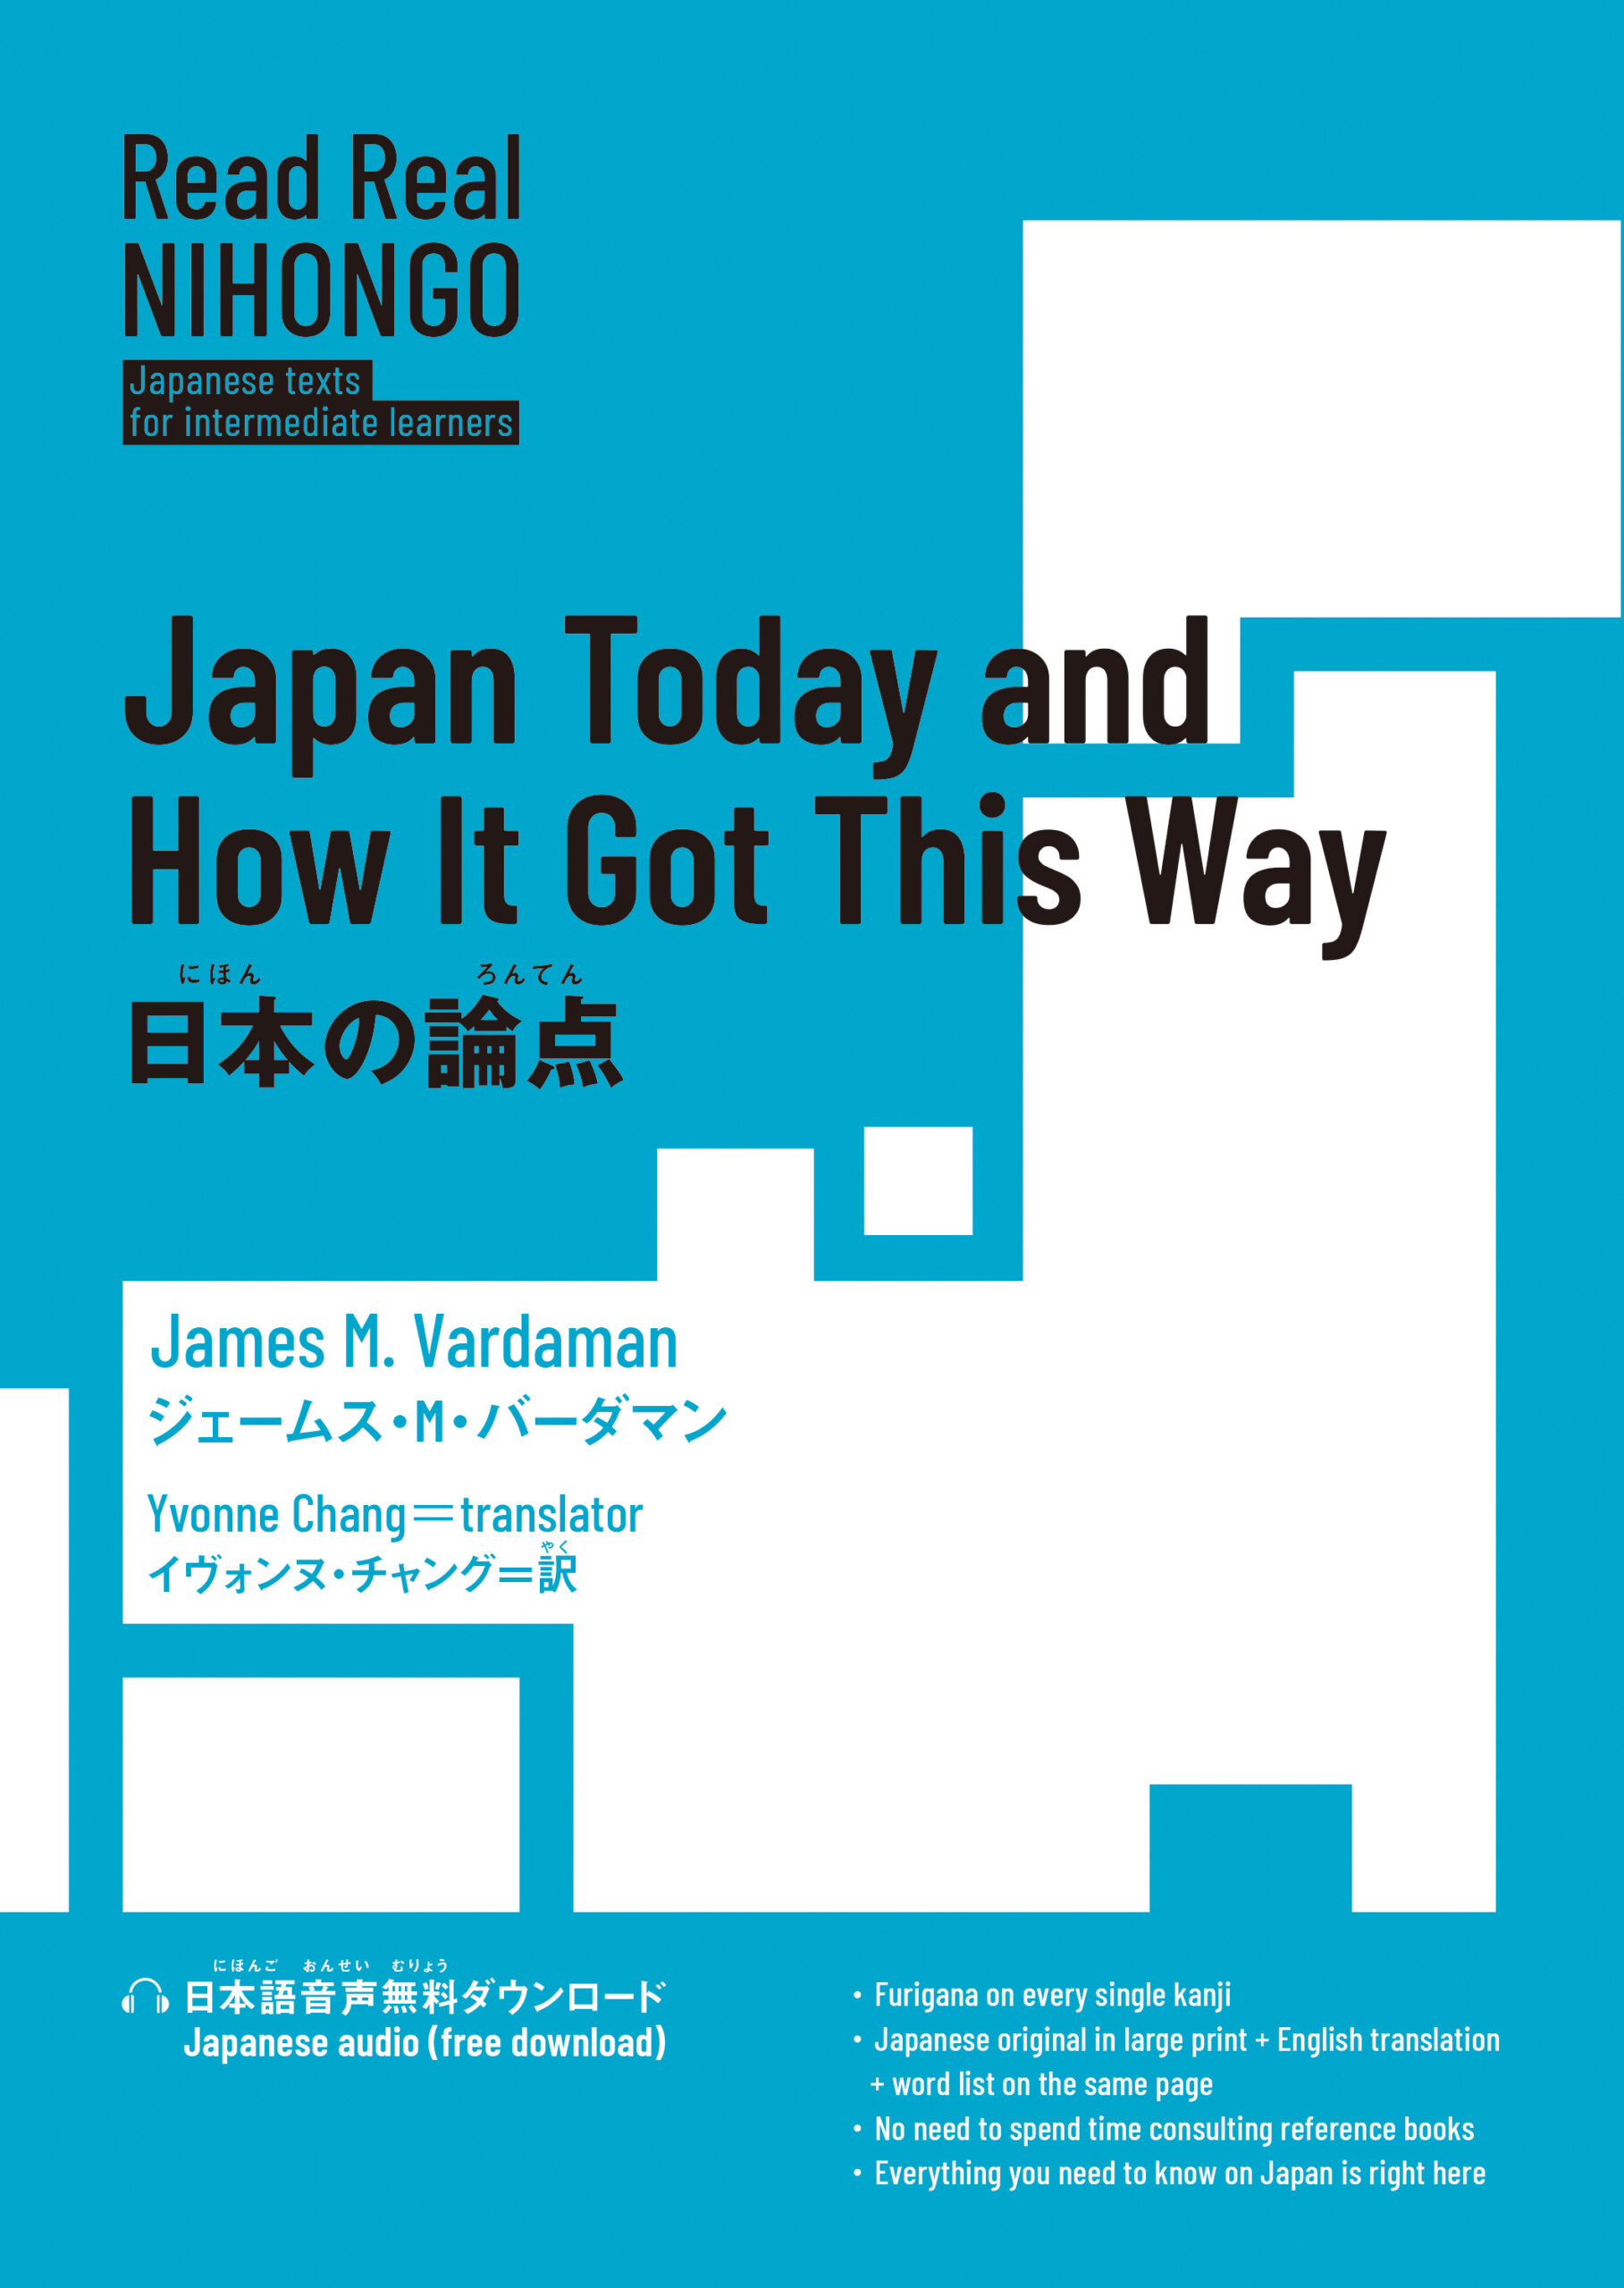 『日本の論点（Read Real NIHONGO）』ジェームス・M・バーダマン (著)、イヴォンヌ・チャング (訳)